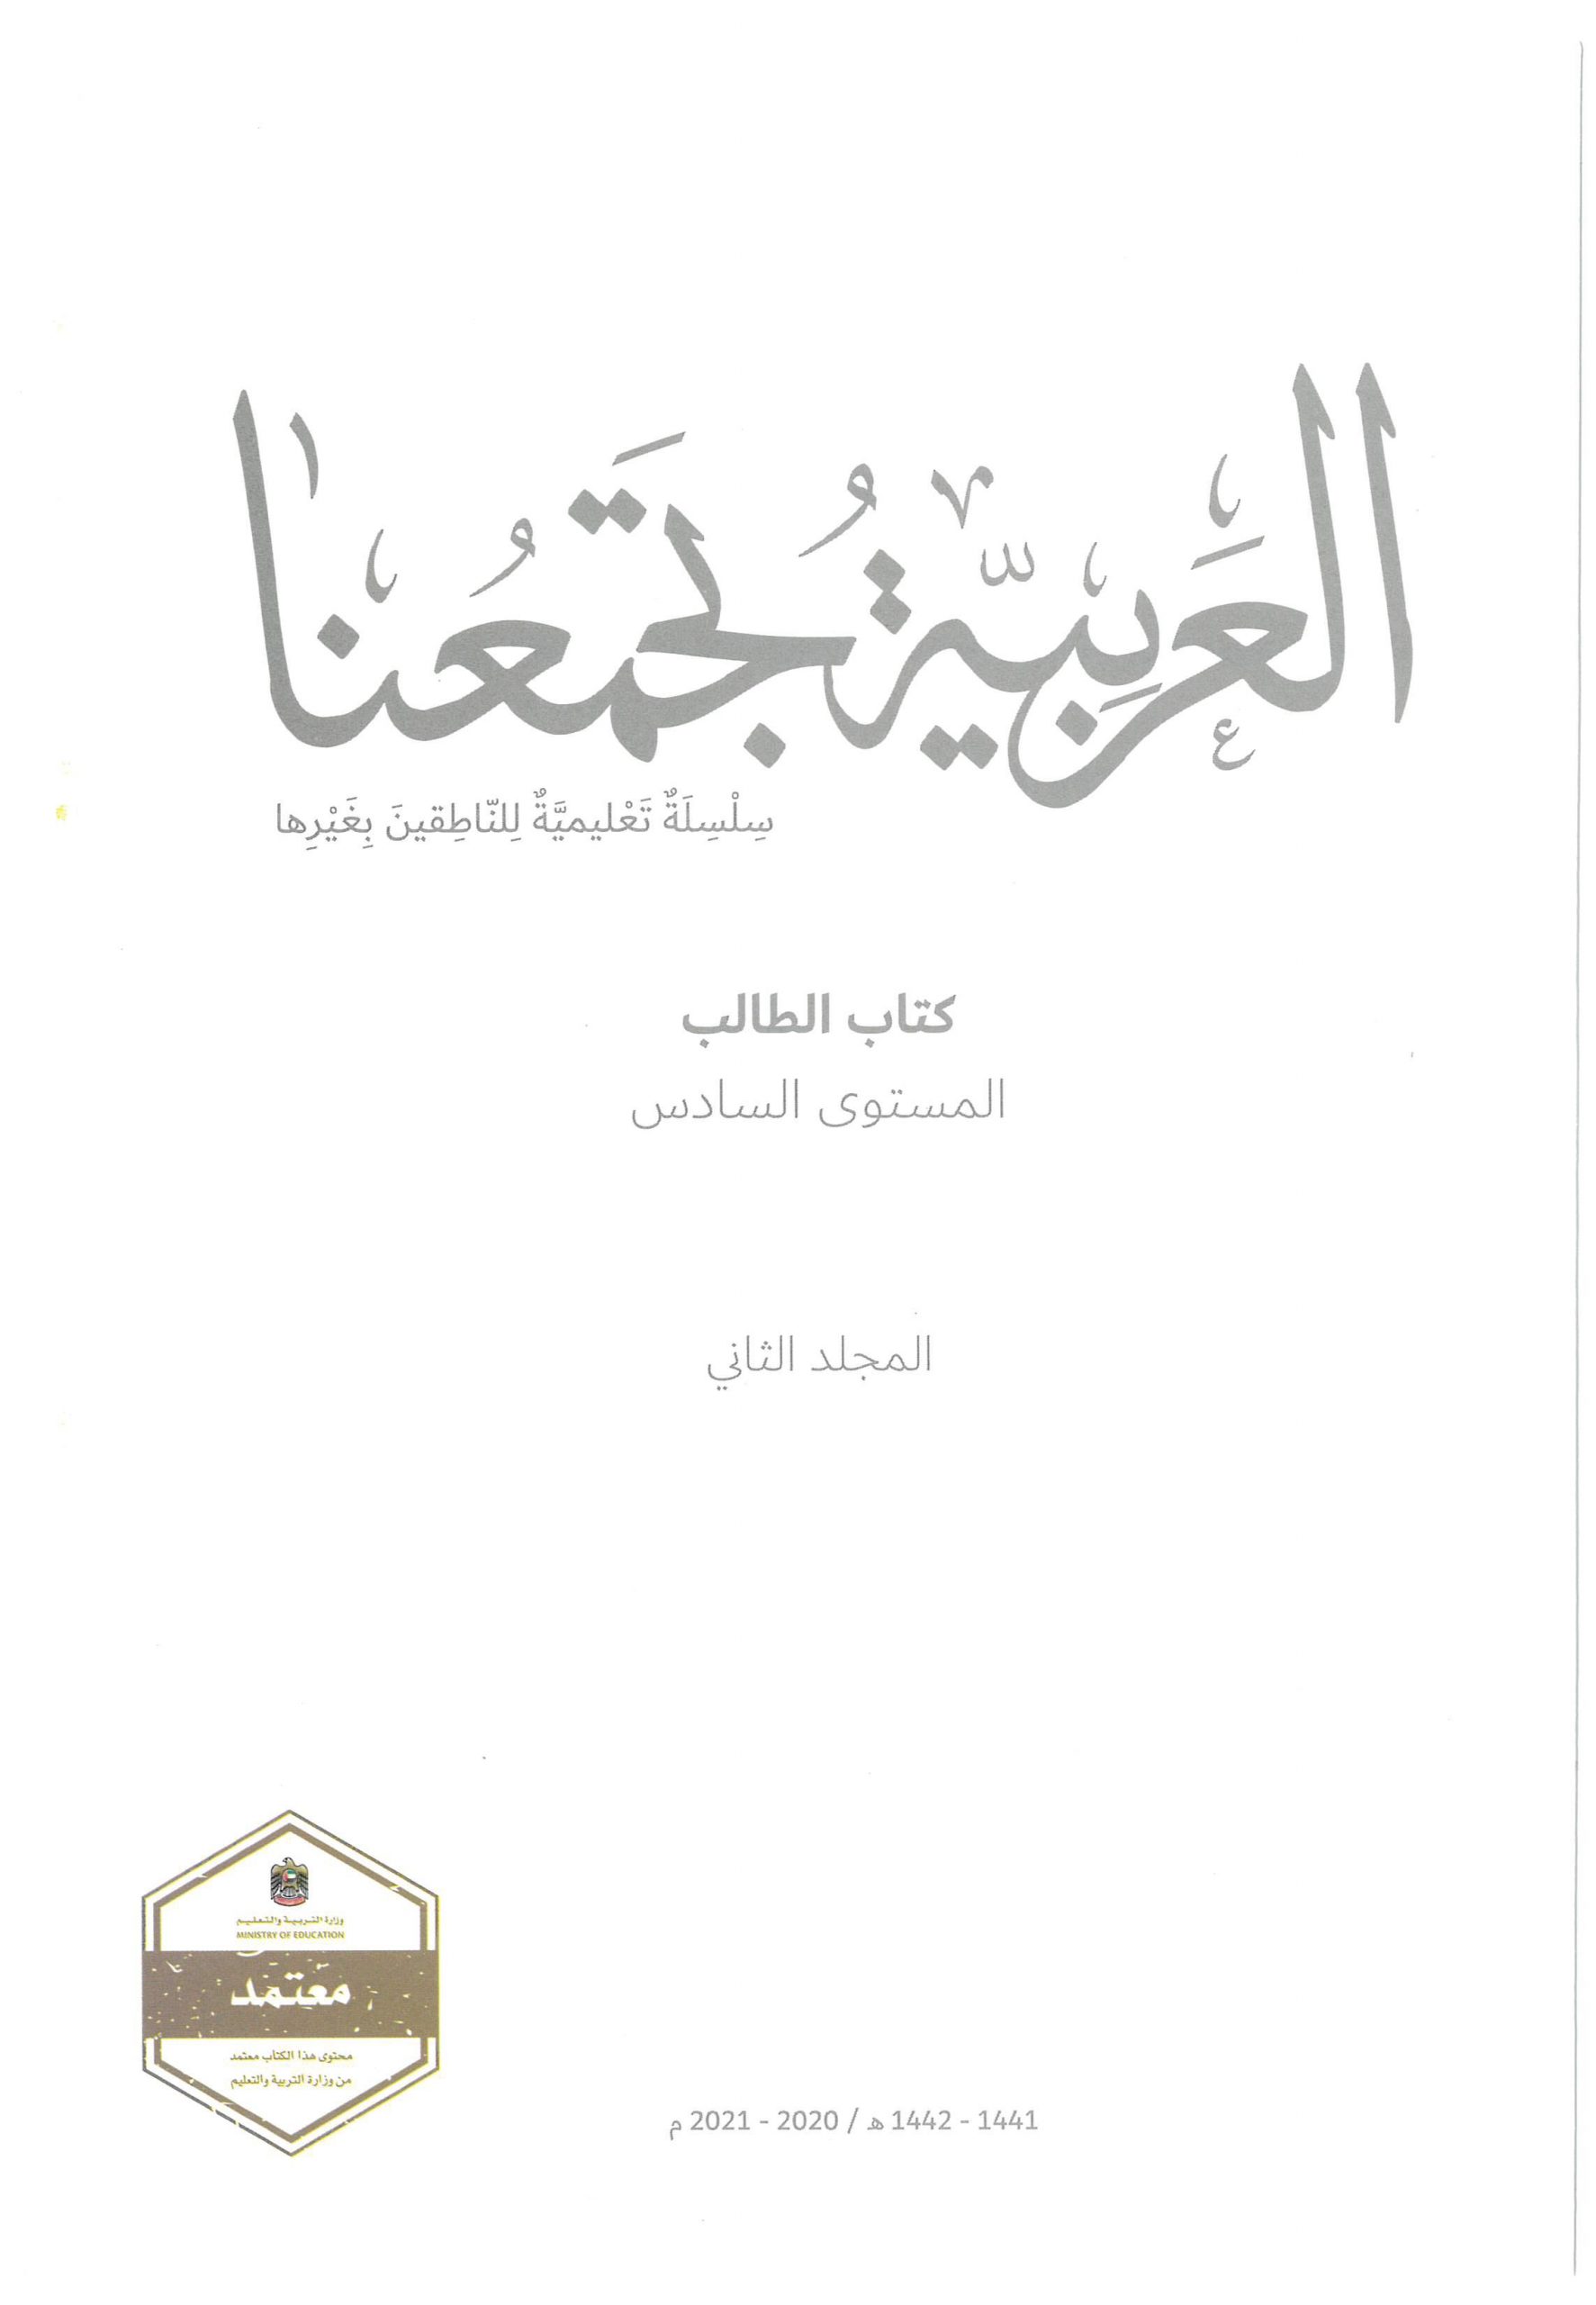 كتاب الطالب الفصل الدراسي الثاني 2020 -2021 لغير الناطقين بها الصف السادس مادة اللغة العربية